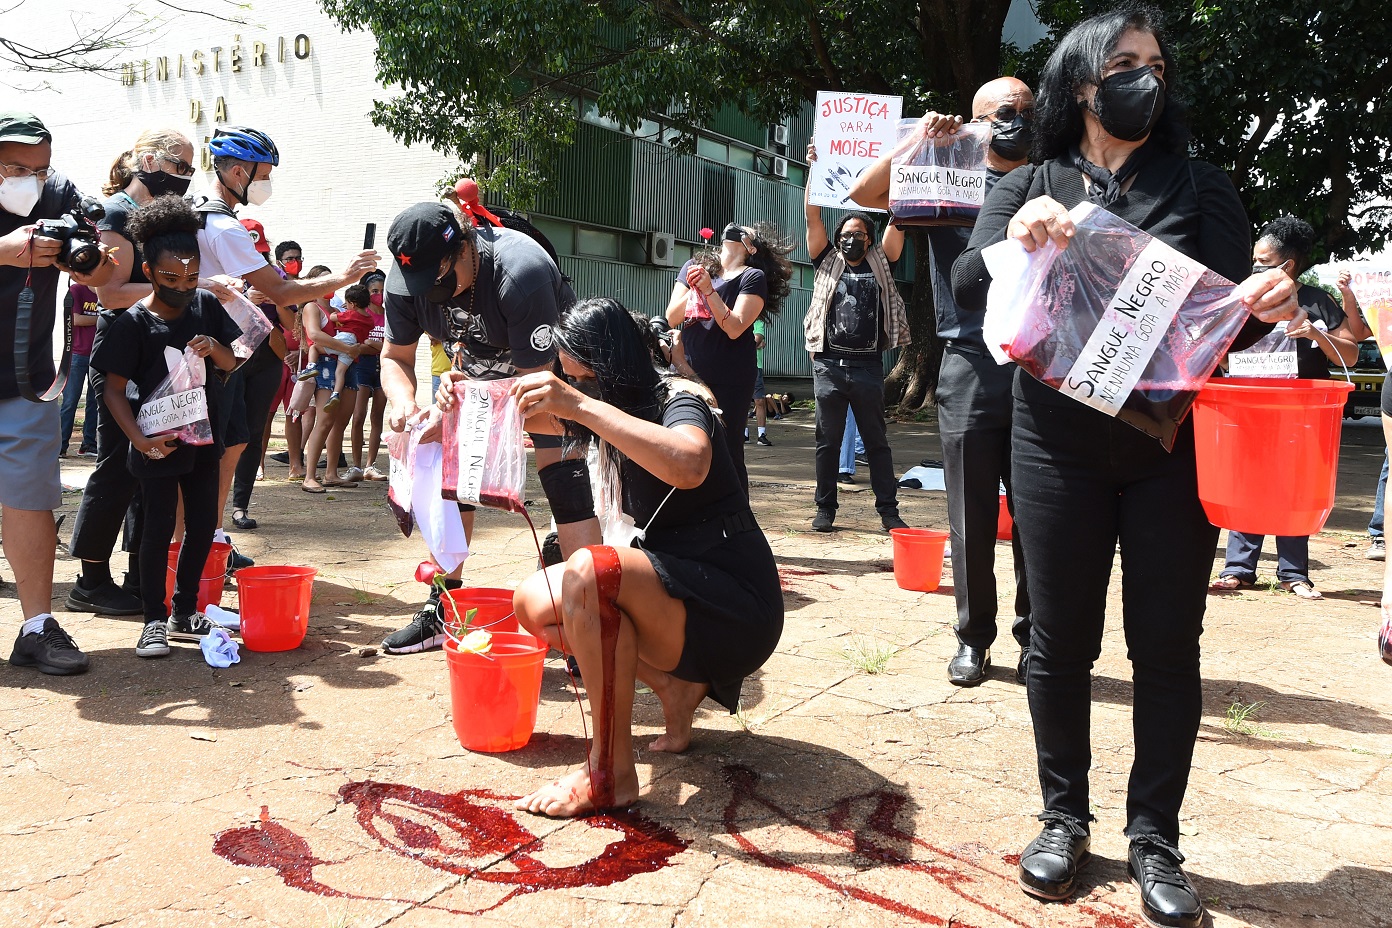 Manifestantes derramaram sangue no chão durante um protesto contra a morte do imigrante congolês no Rio. Foto Evaristo Sá/AFP